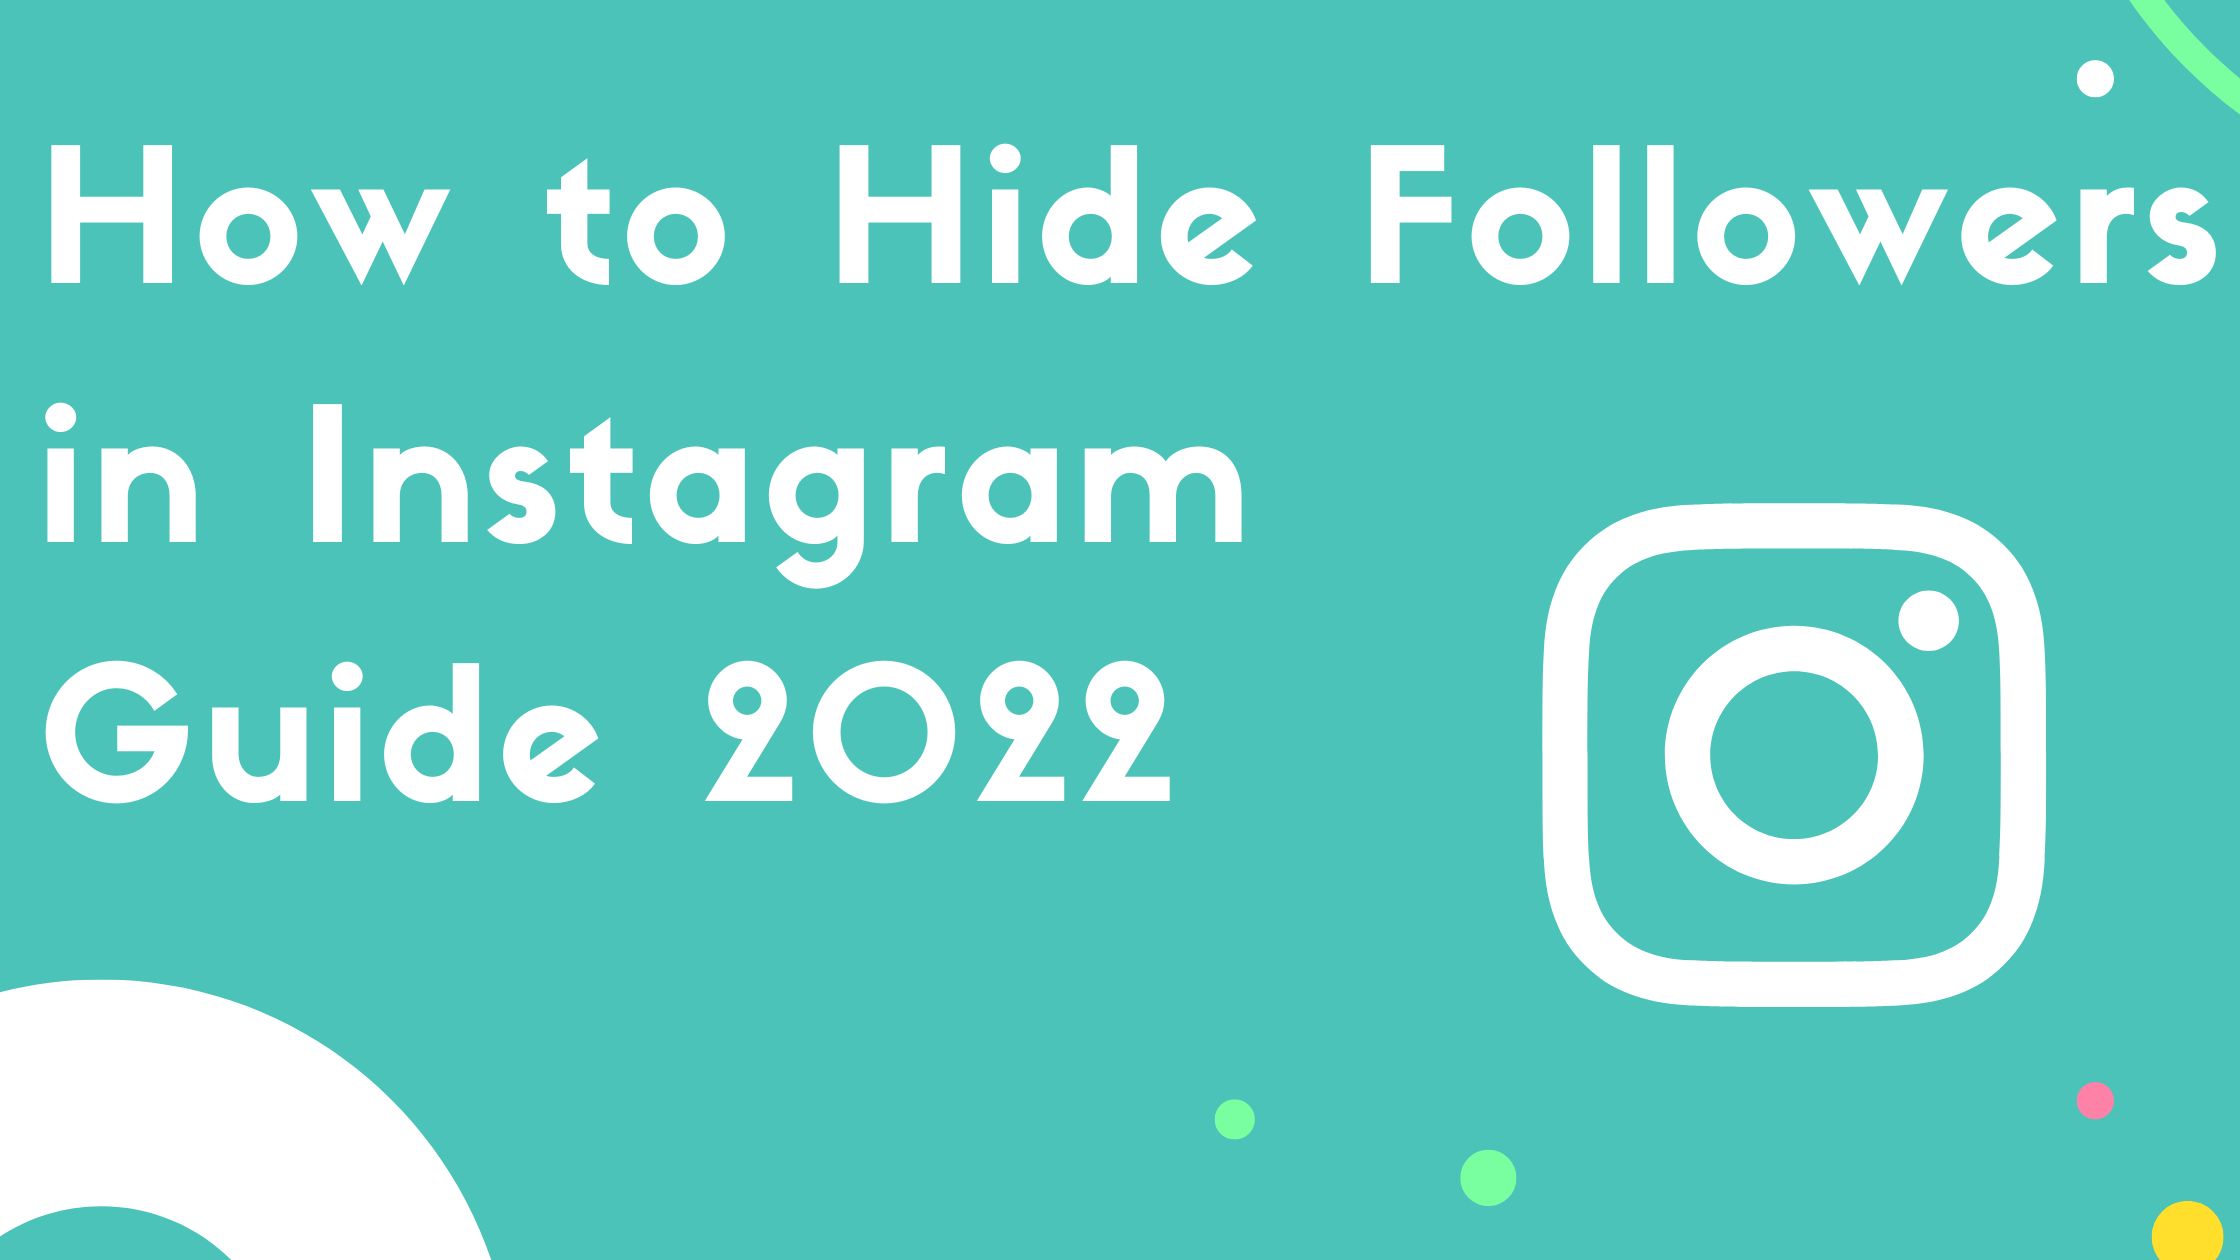 Hide Followers on Instagram